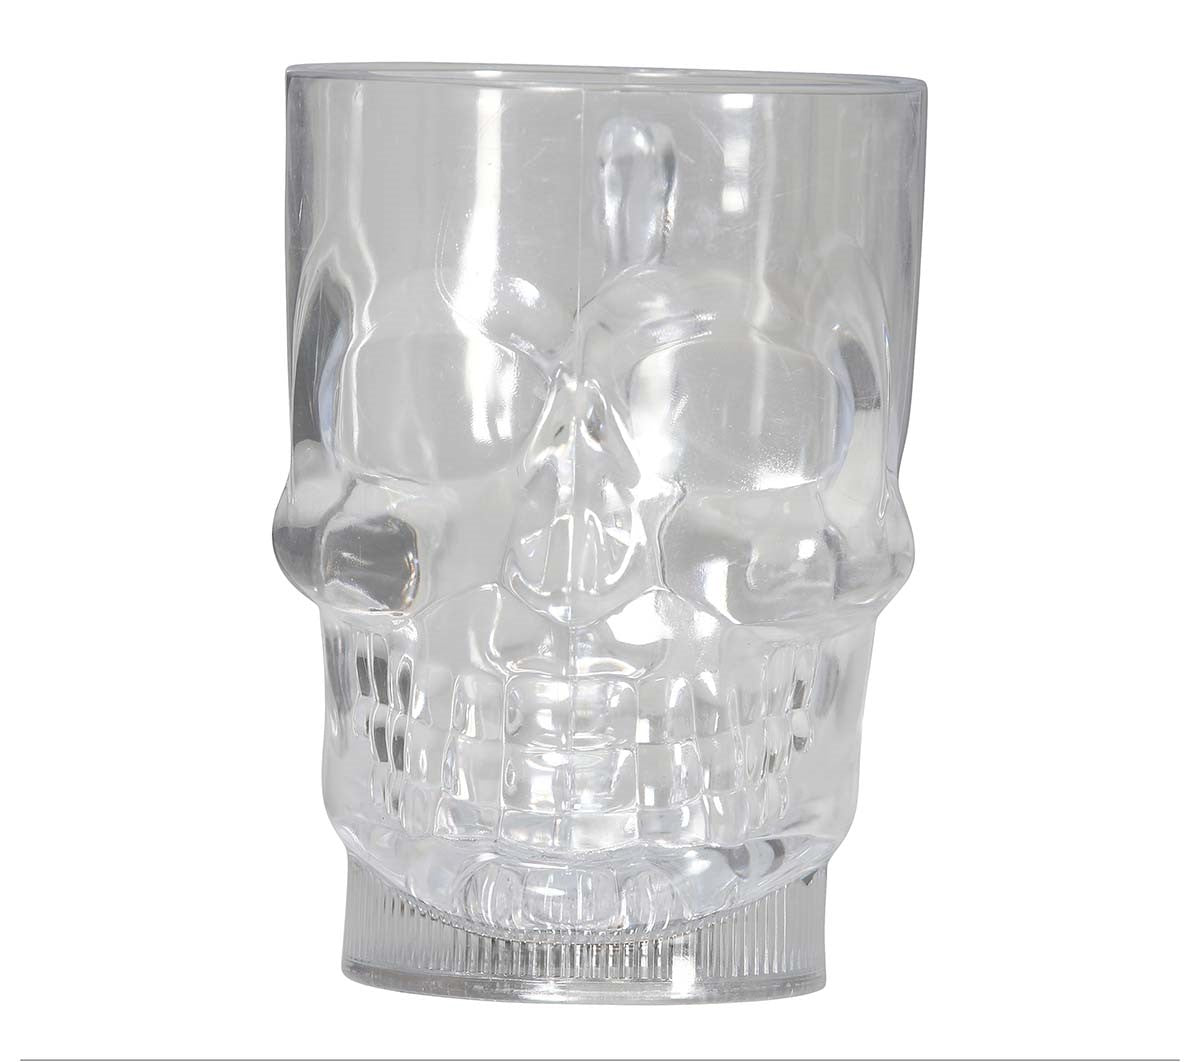 Skull Glass Light-up